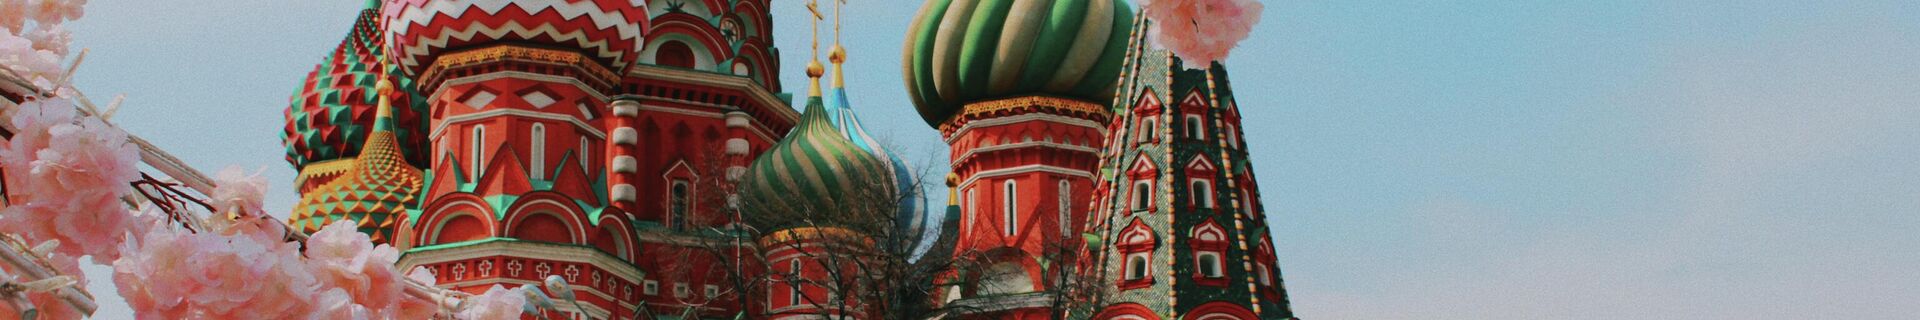 ნეტარი ვასილის სახელობის ტაძარი რუსეთში - Sputnik საქართველო